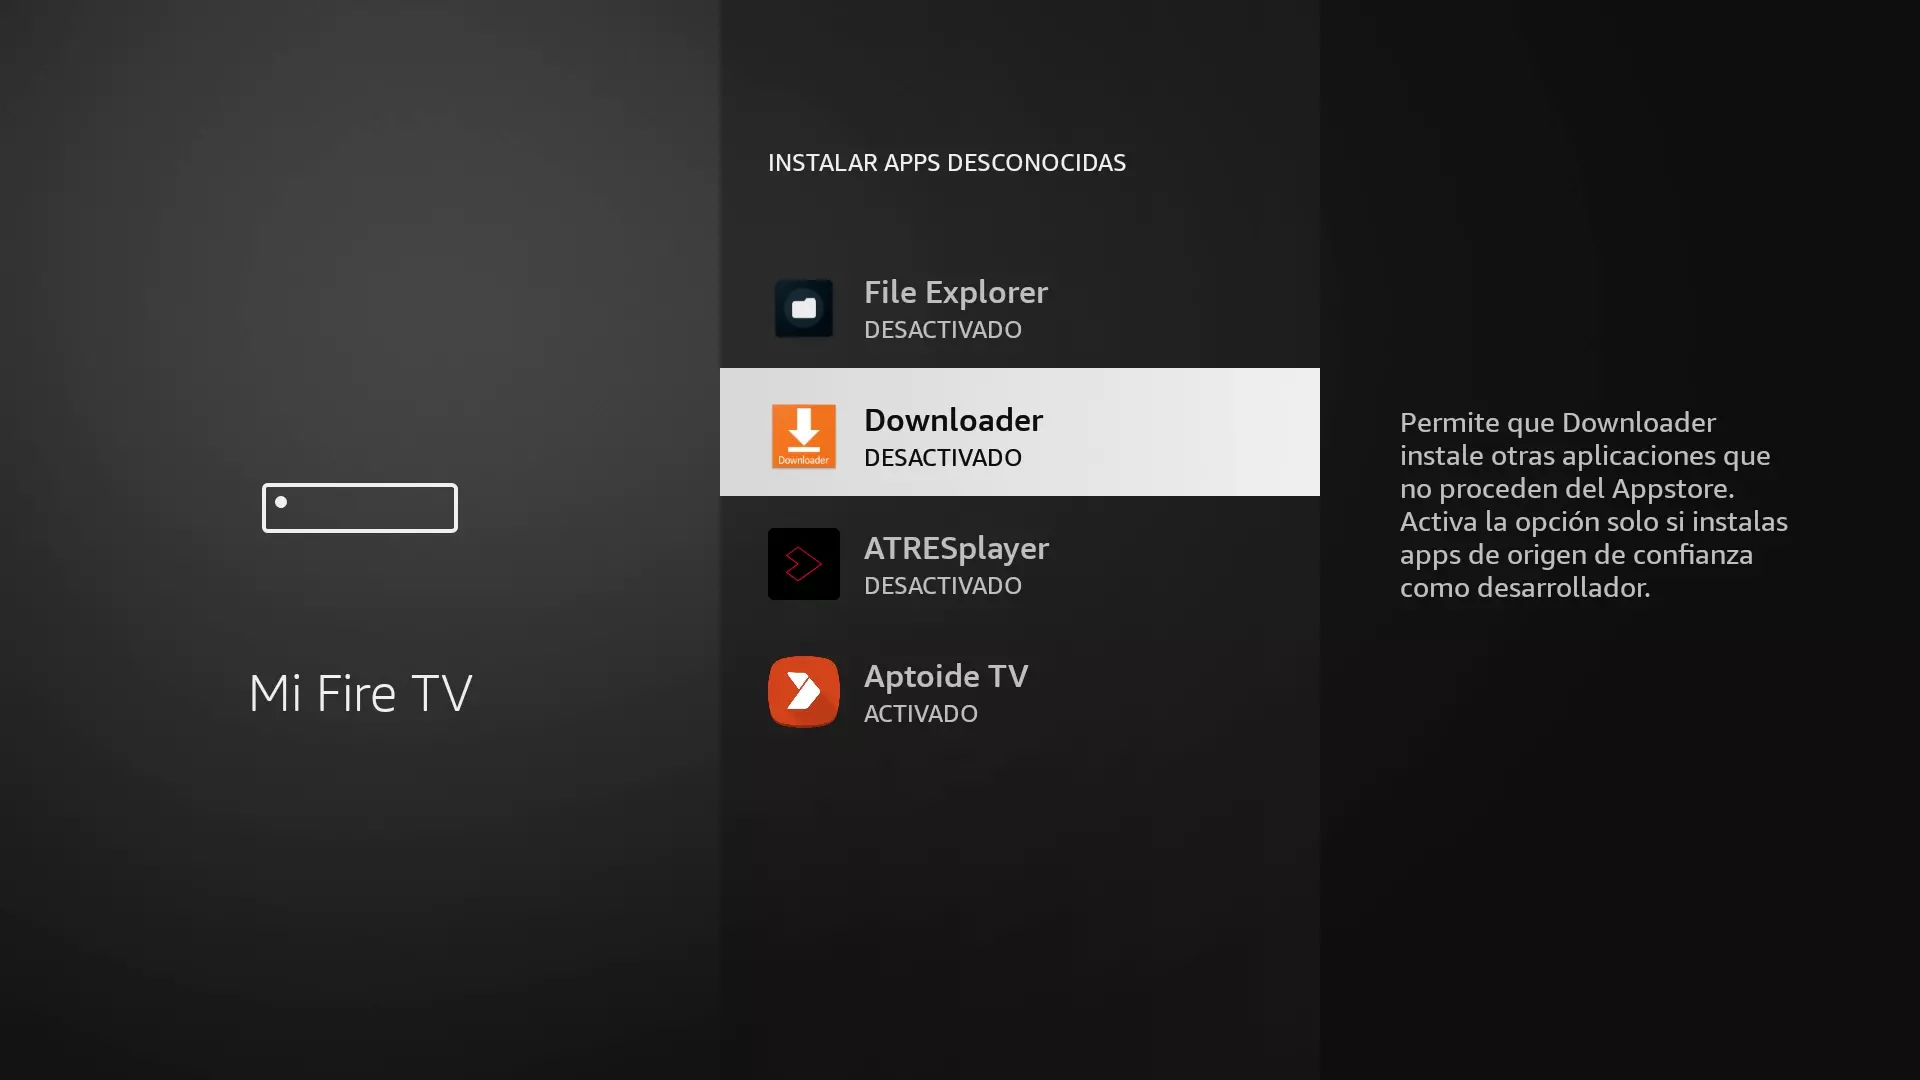 Activación del permiso a Downloader para instalar apps desconocidas en el Fire TV Stick